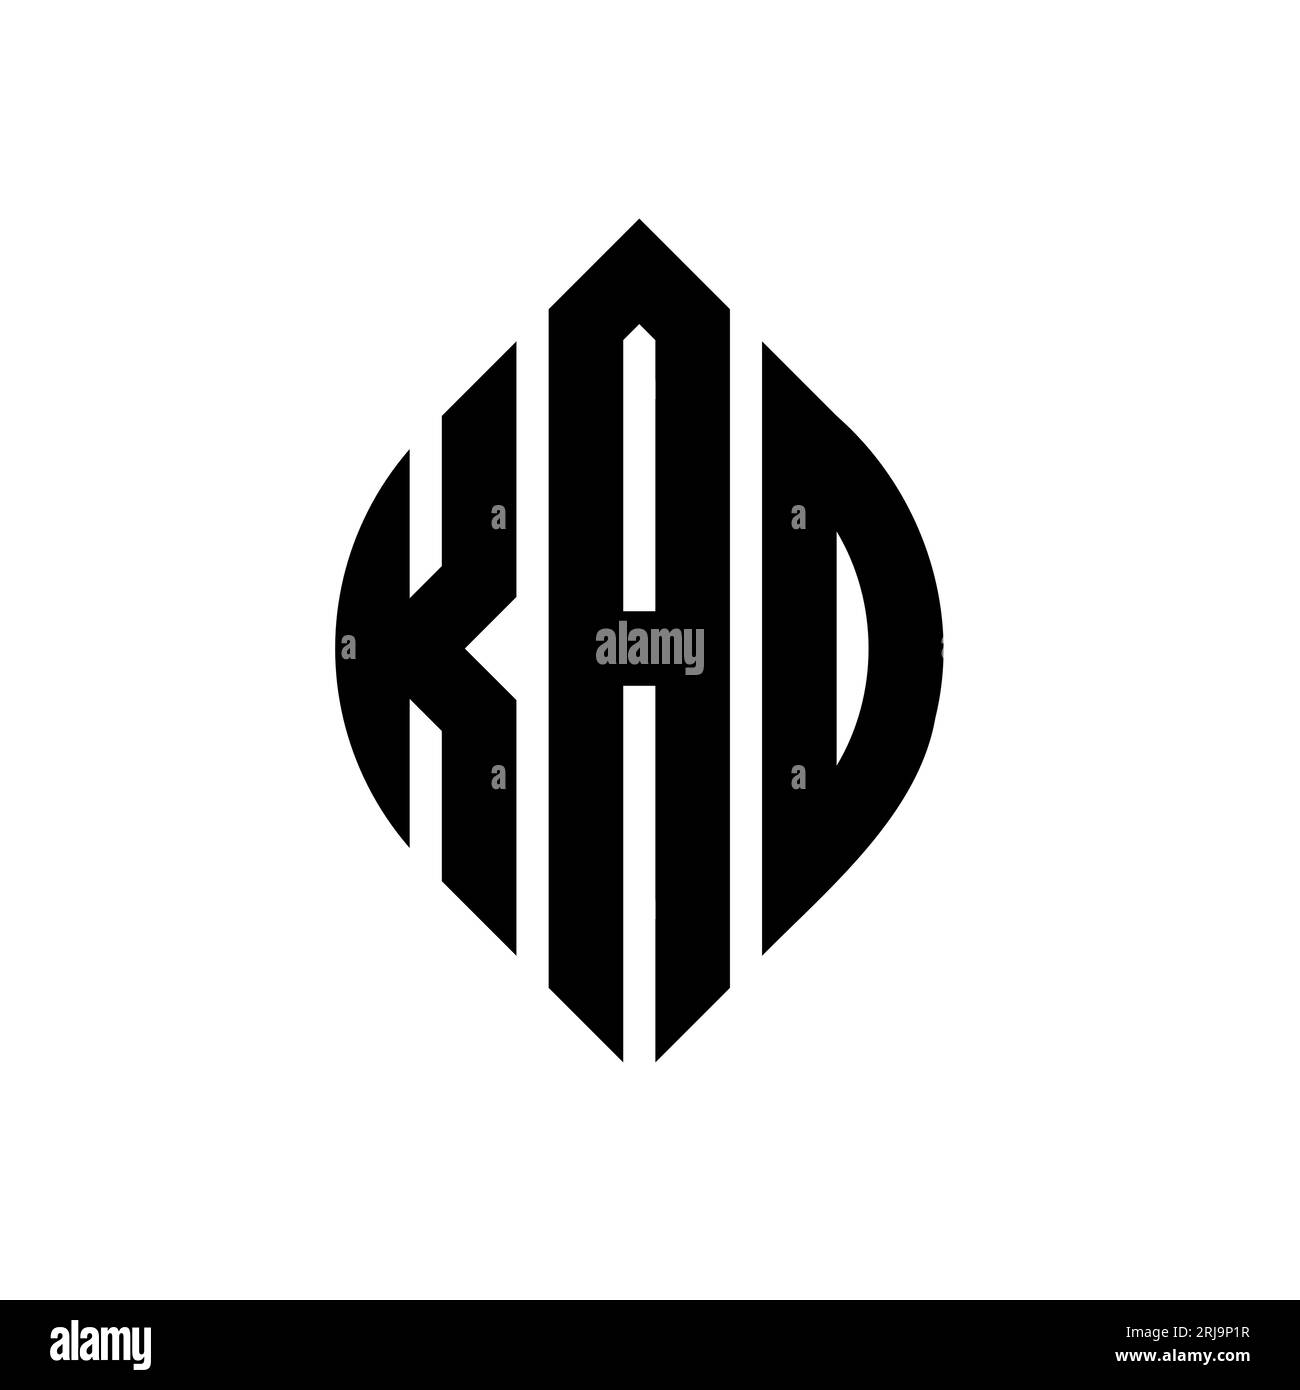 KAO-Logo mit kreisförmigem Buchstaben, Kreis- und Ellipsenform. KAO-Ellipsenbuchstaben im typografischen Stil. Die drei Initialen bilden ein kreisförmiges Logo. KAO CI Stock Vektor